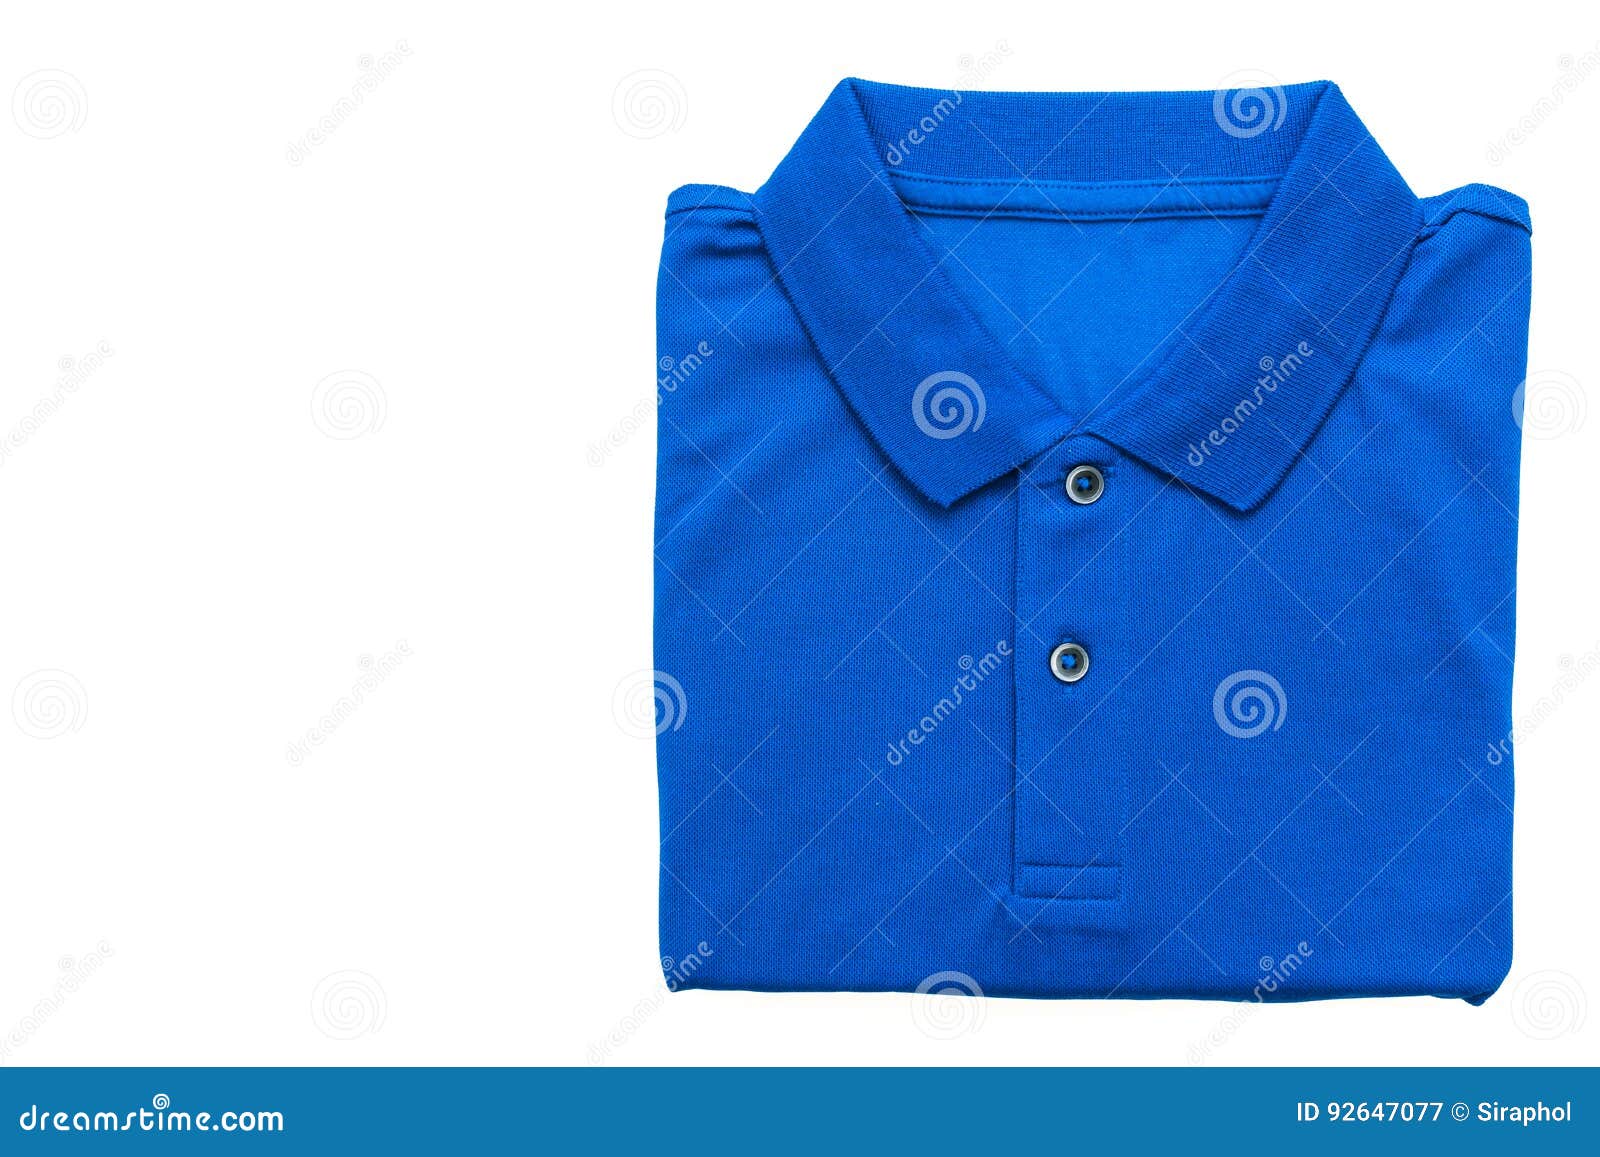 Polo shirt stock image. Image of template, fabric, polo - 92647077